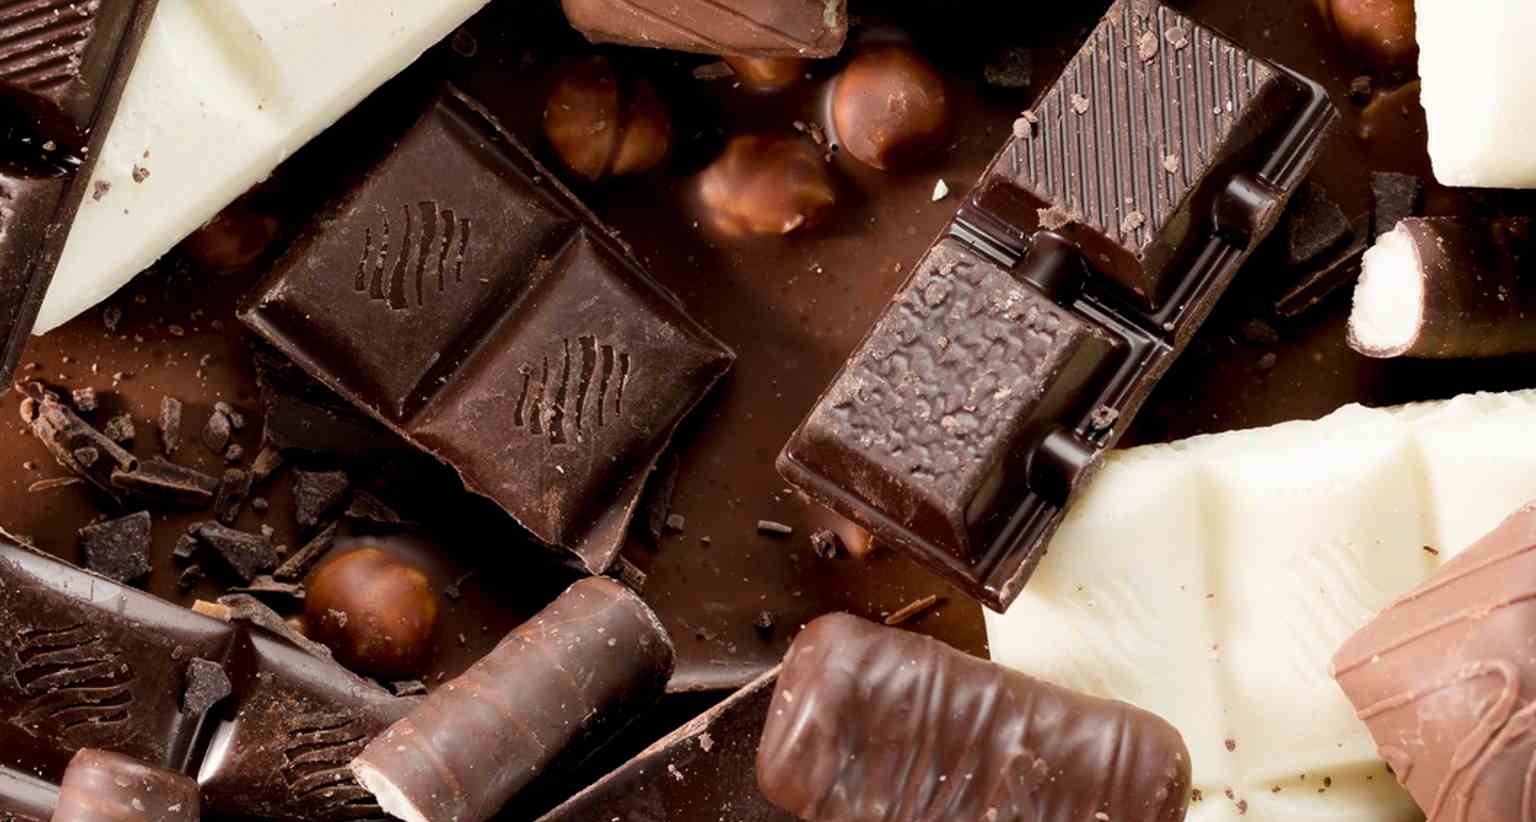 Chocolatinas